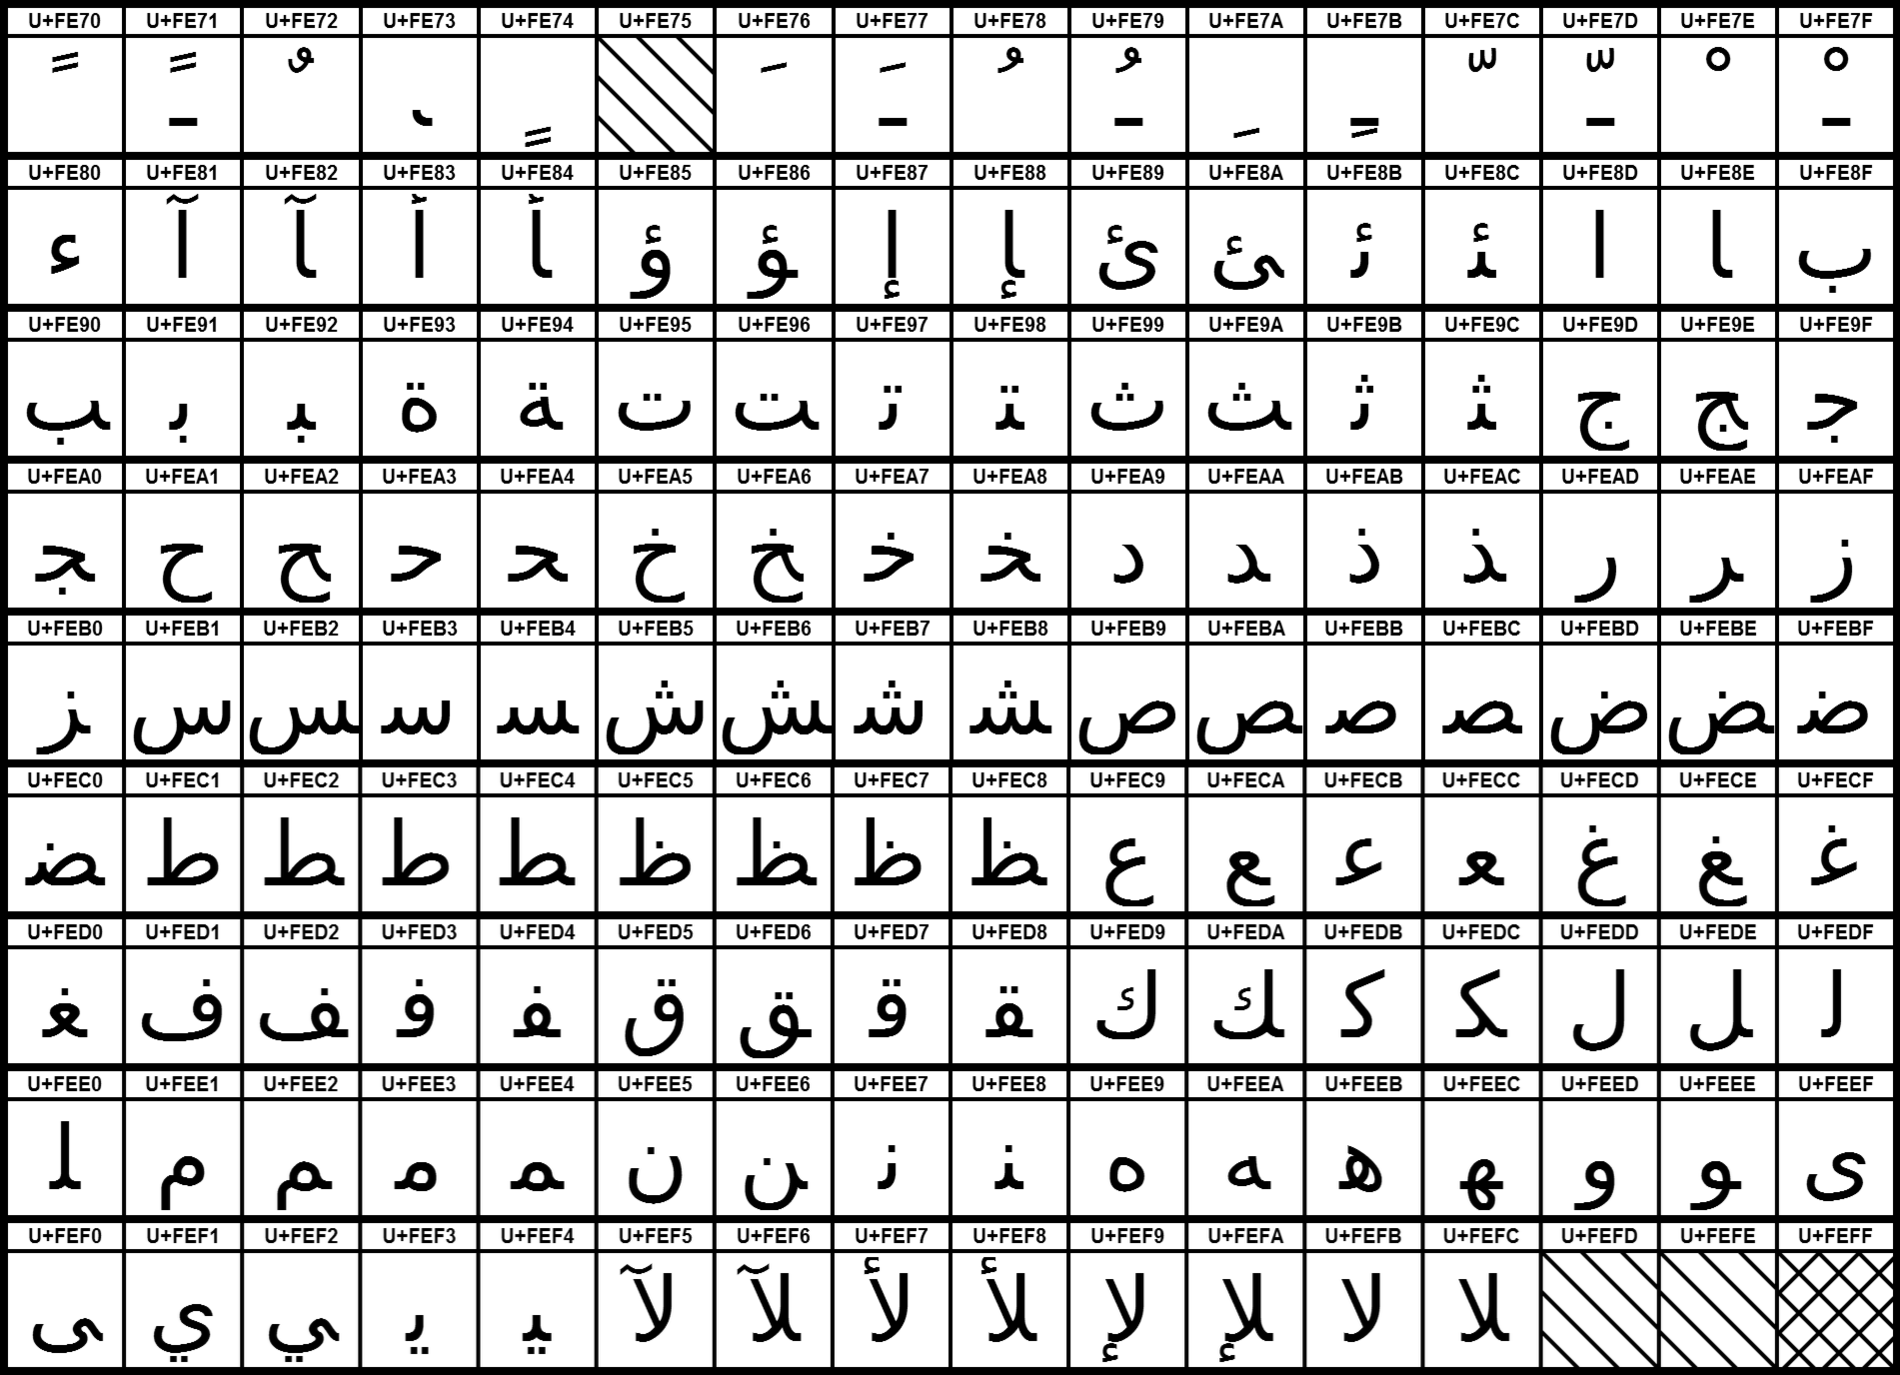 UCB Arapça Sunum Formları-B.png